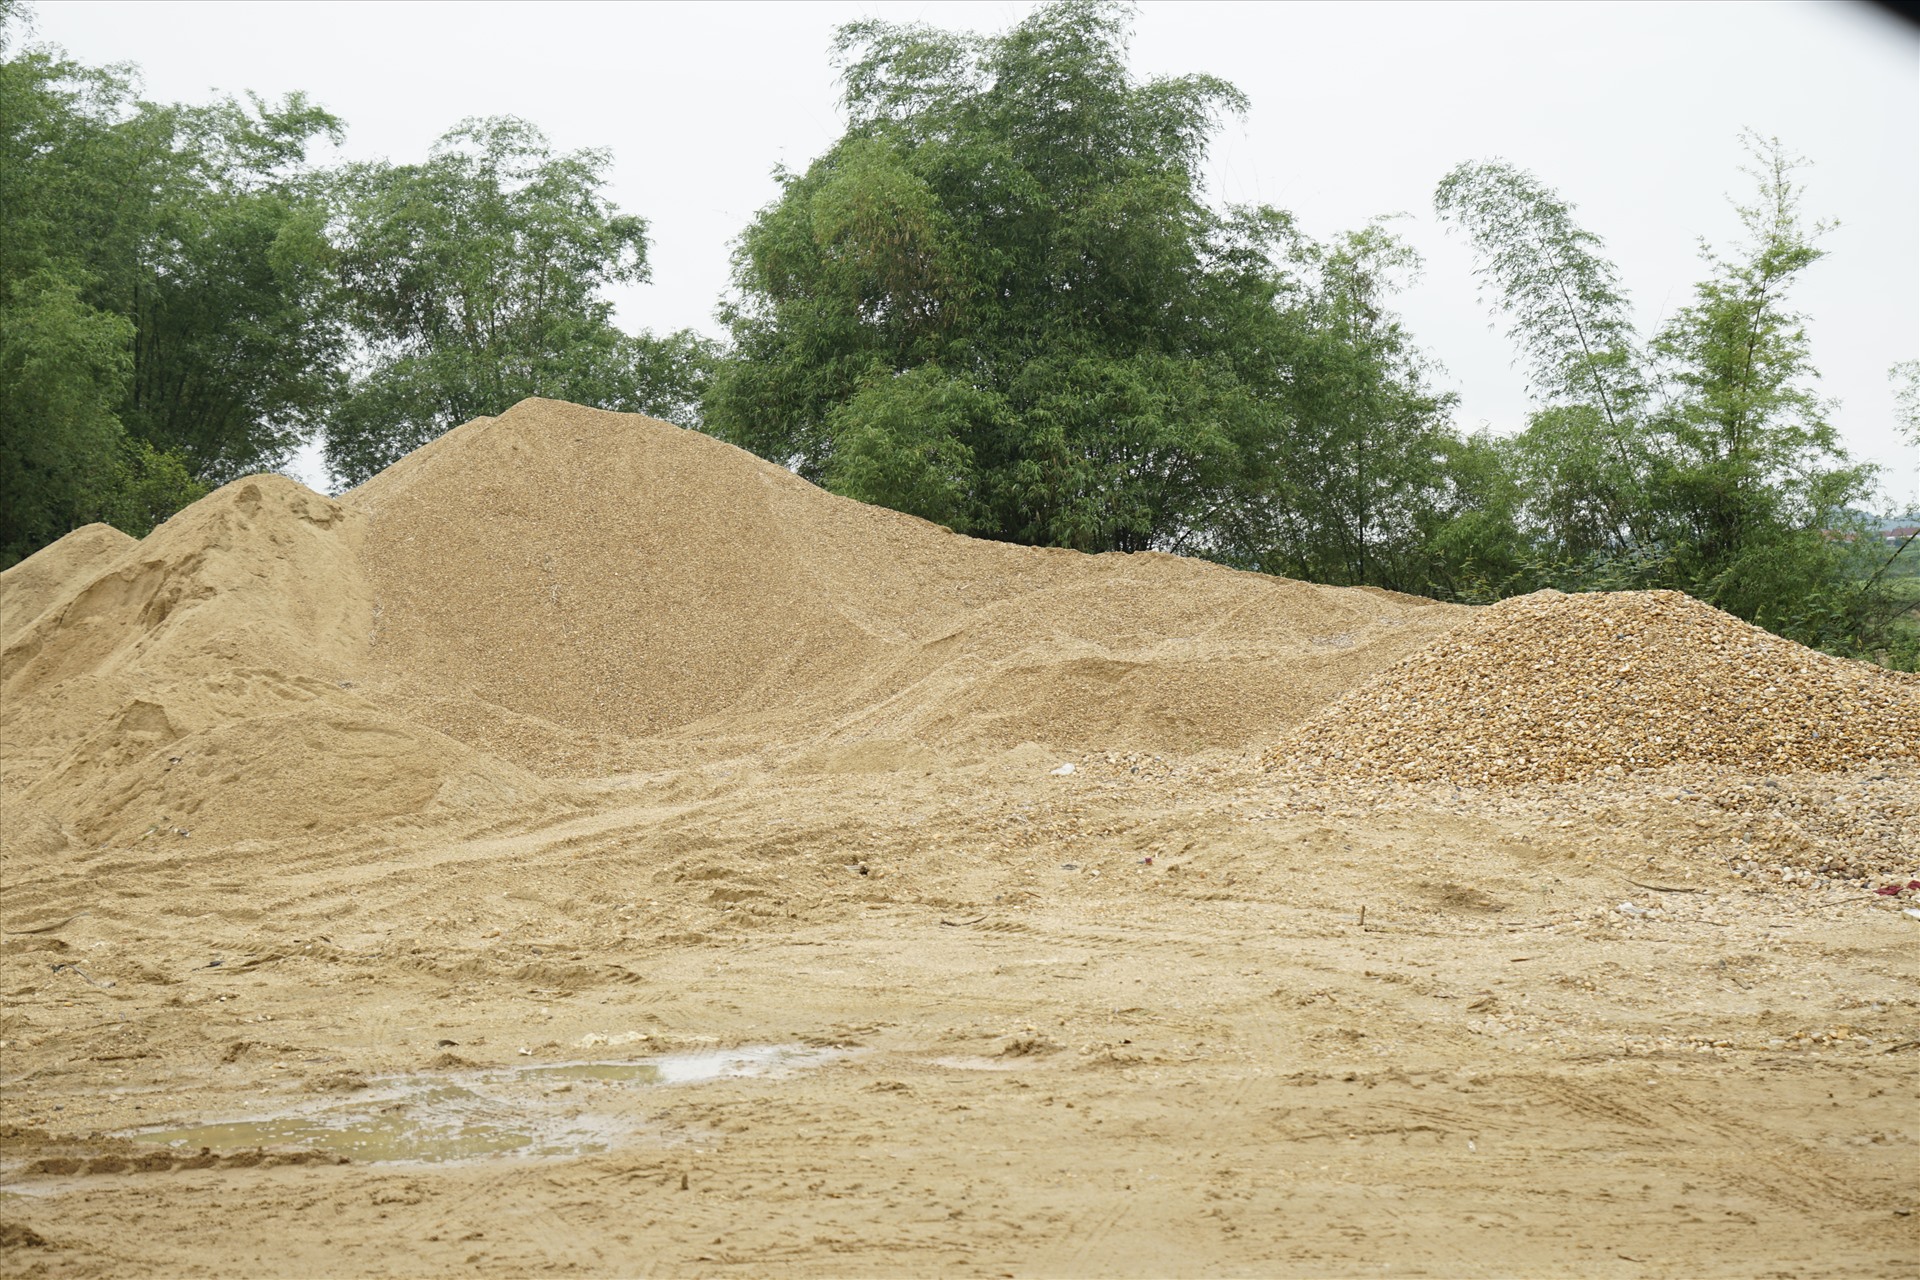 Lượng cát sỏi rất lớn được hút lên từ lòng sông Hiếu. Ảnh: PV